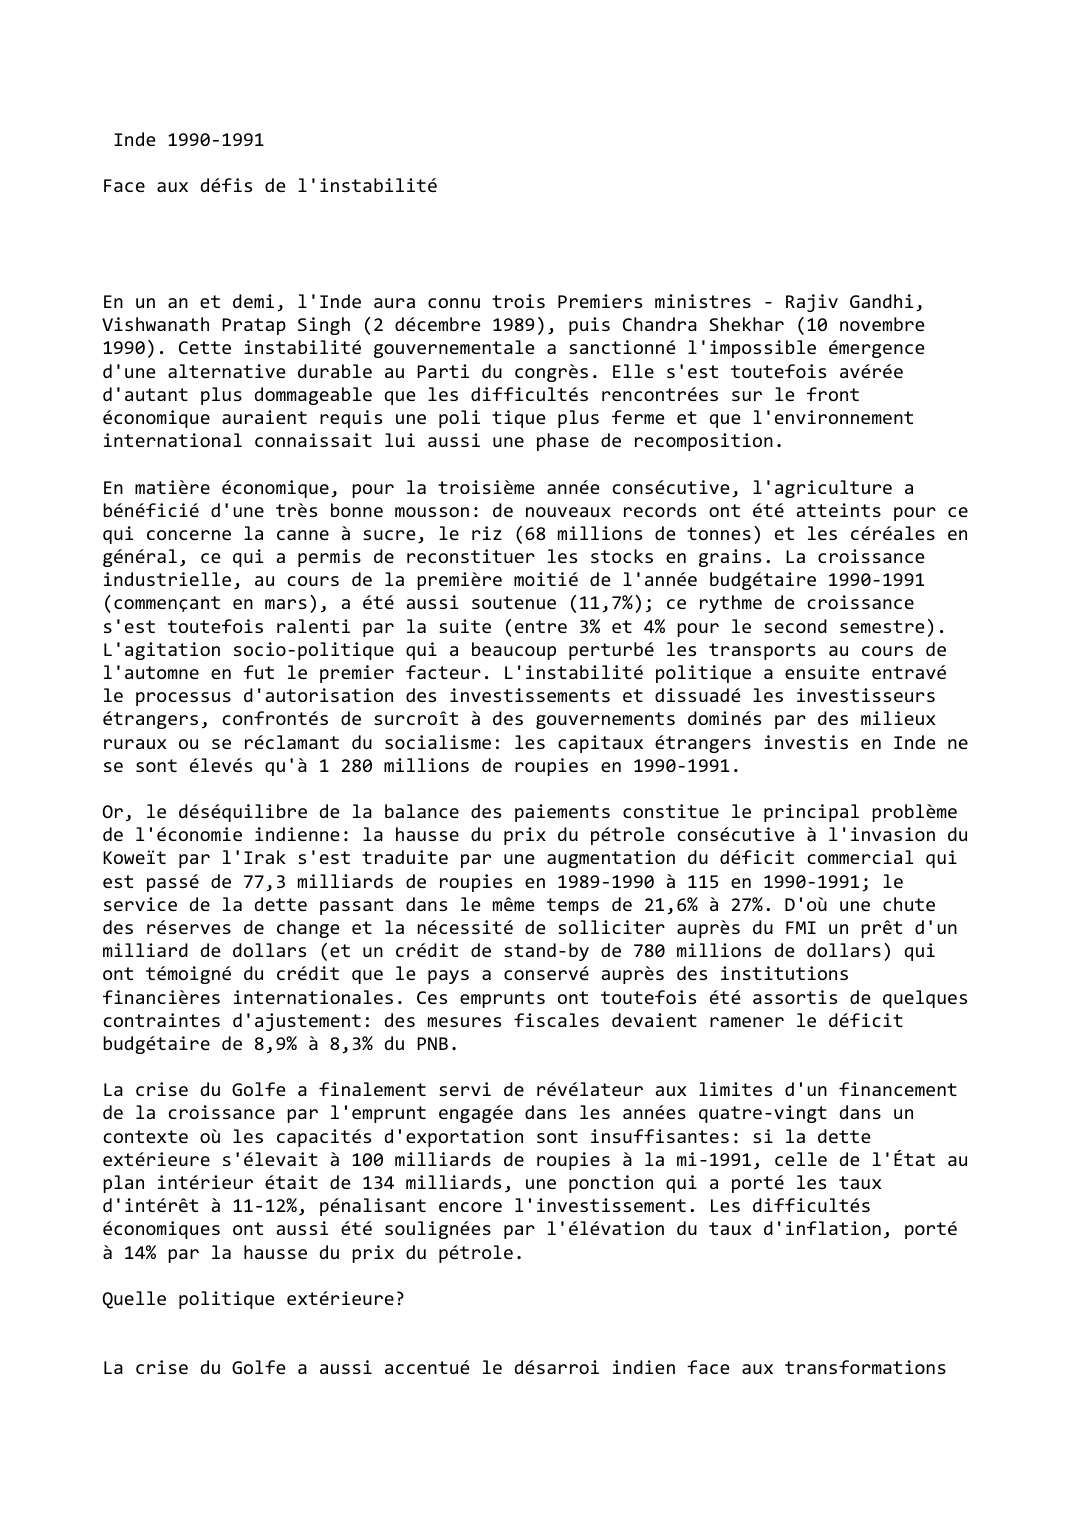 Prévisualisation du document Inde (1990-1991)

Face aux défis de l'instabilité